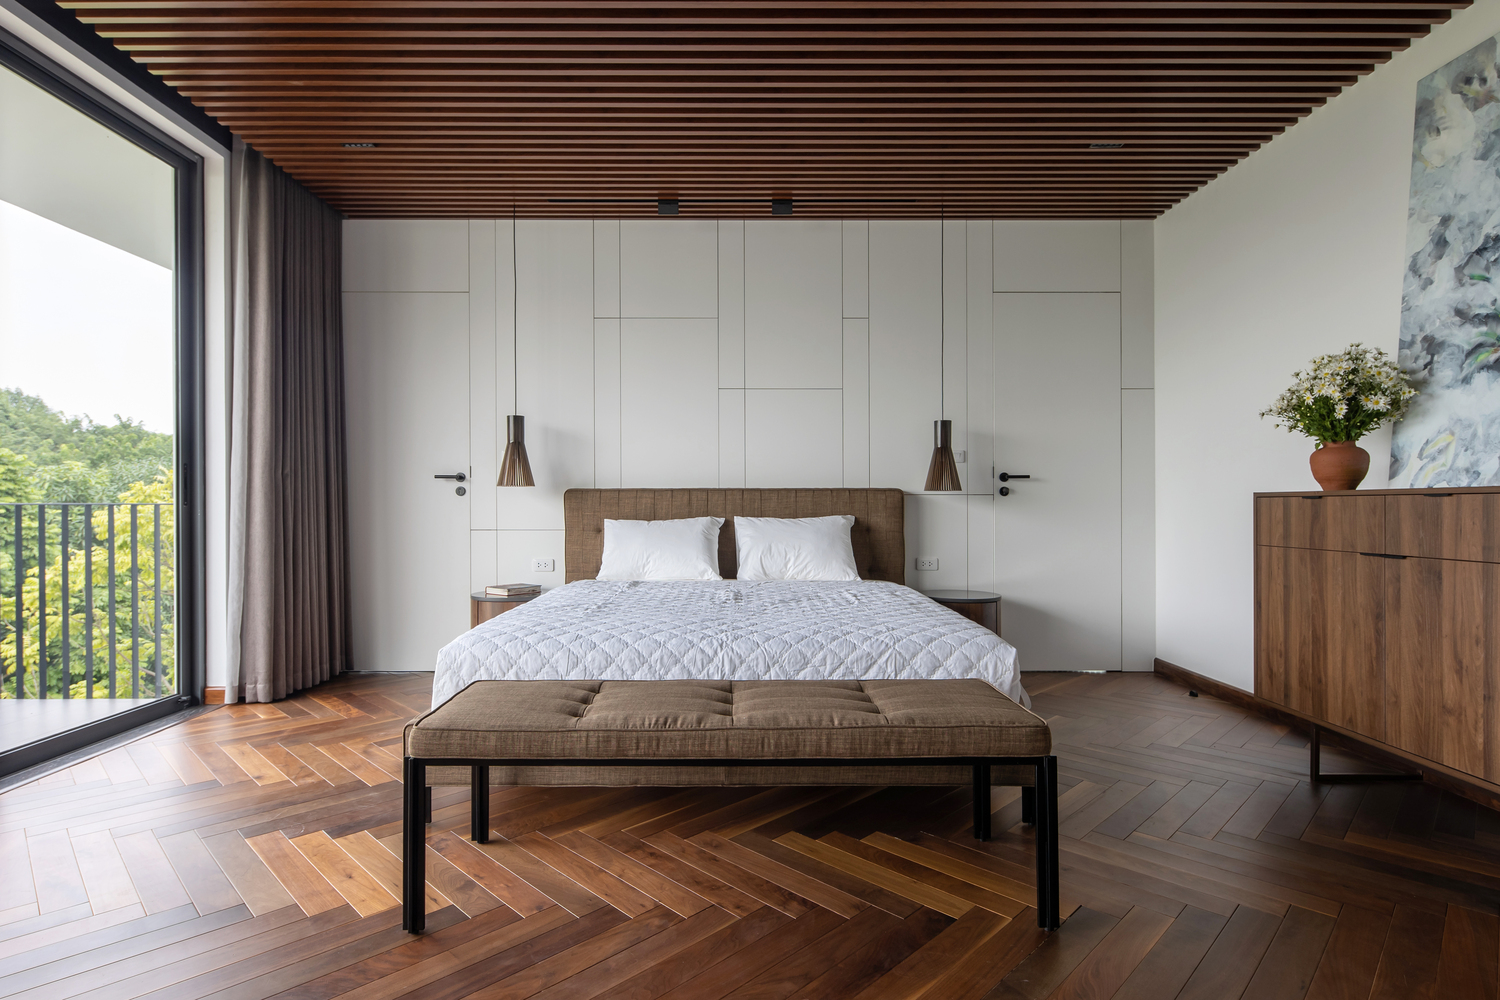 Không gian phòng ngủ thoáng rộng, bài trí nội thất hiện đại tối giản với chất liệu gỗ màu cánh gián ấm áp cho cà sàn và lam trên trần nhà.